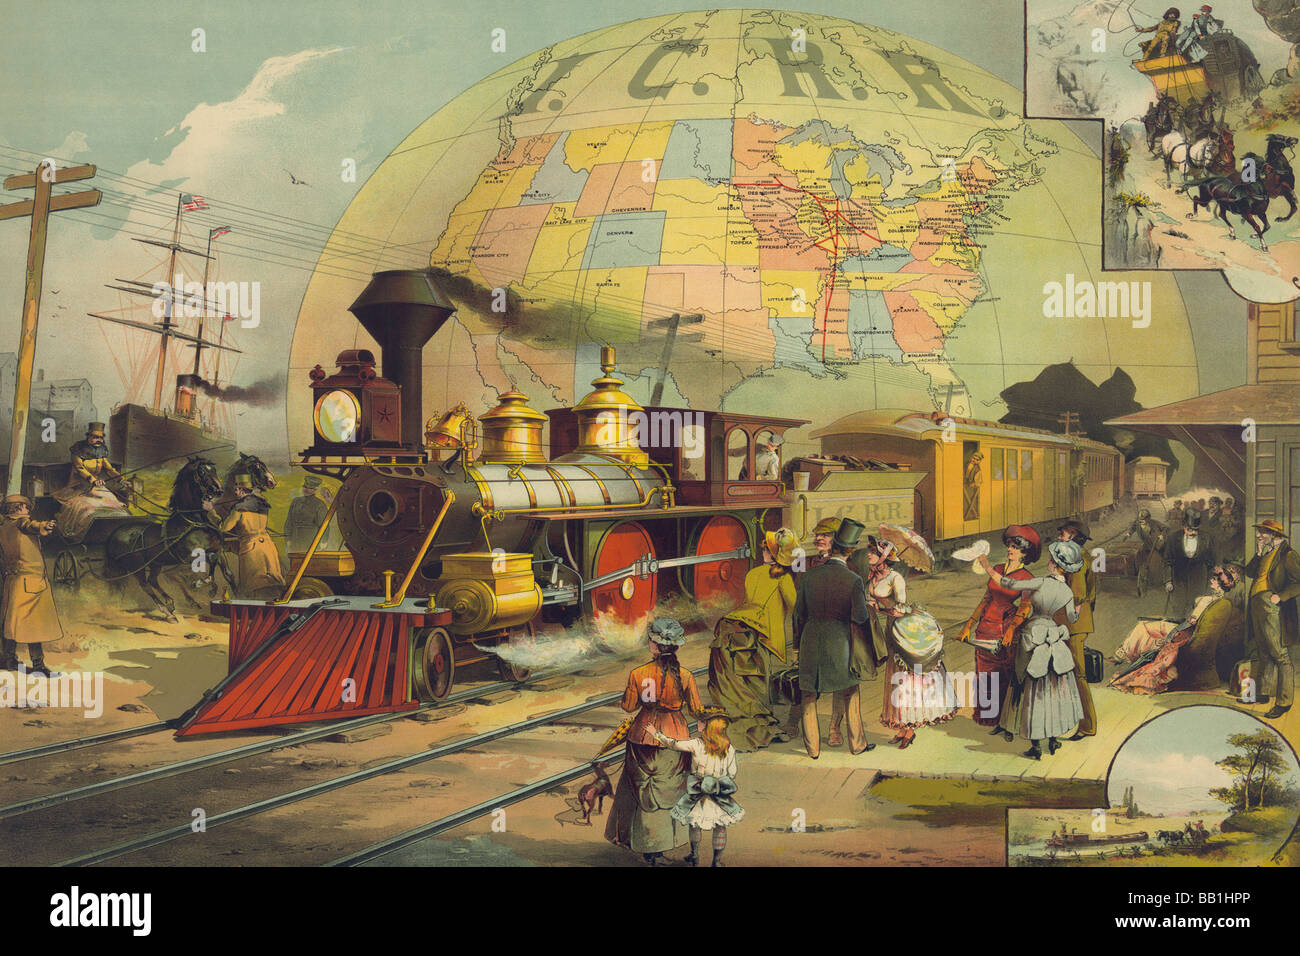 The World's railroad scene Stock Photo